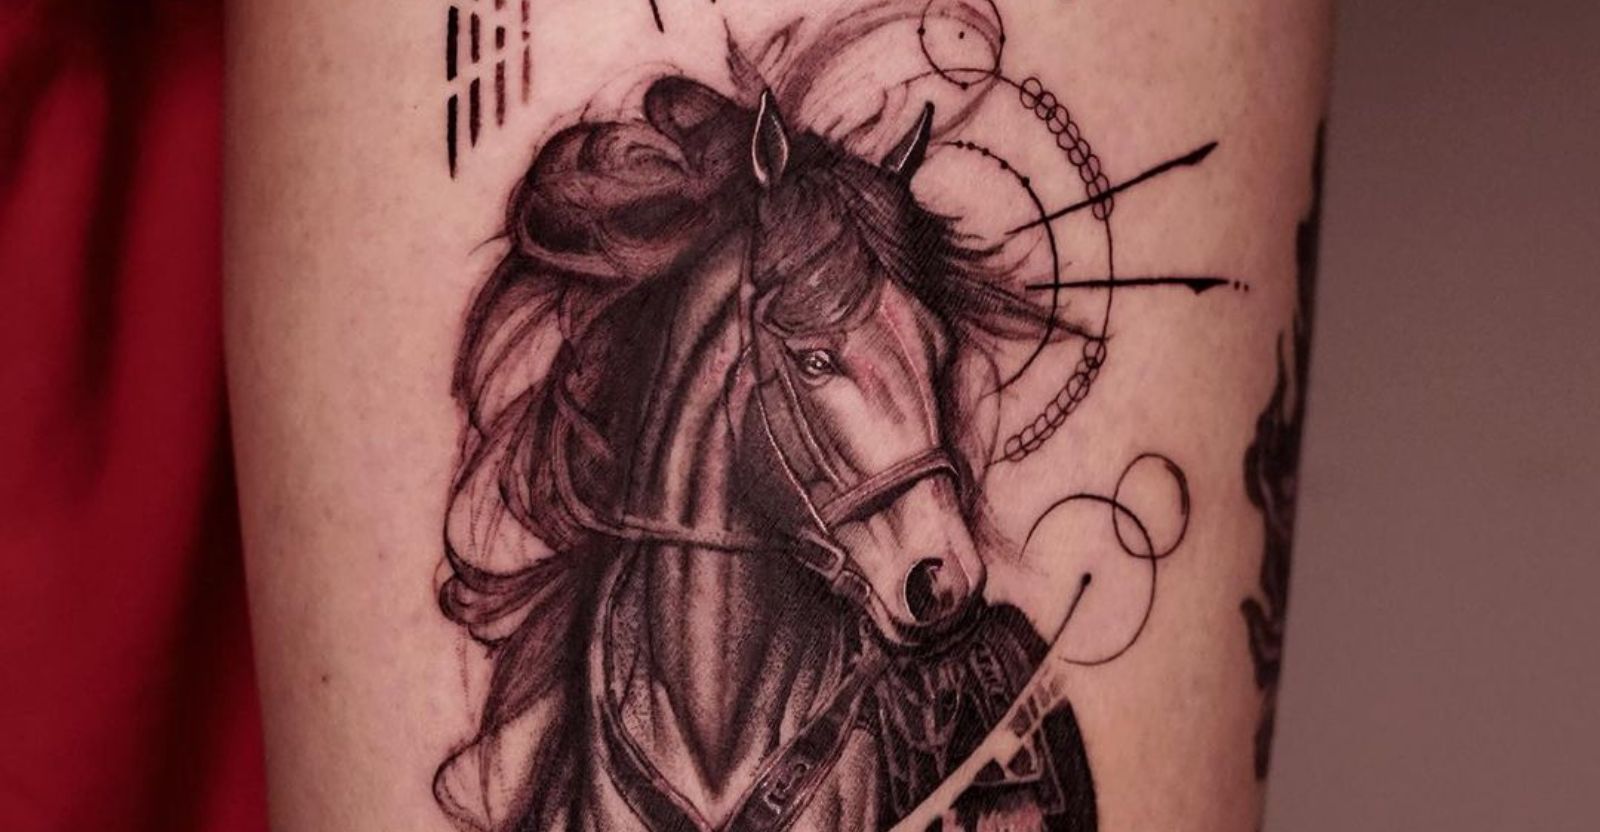 Horse Tribal Art Decal Sticker